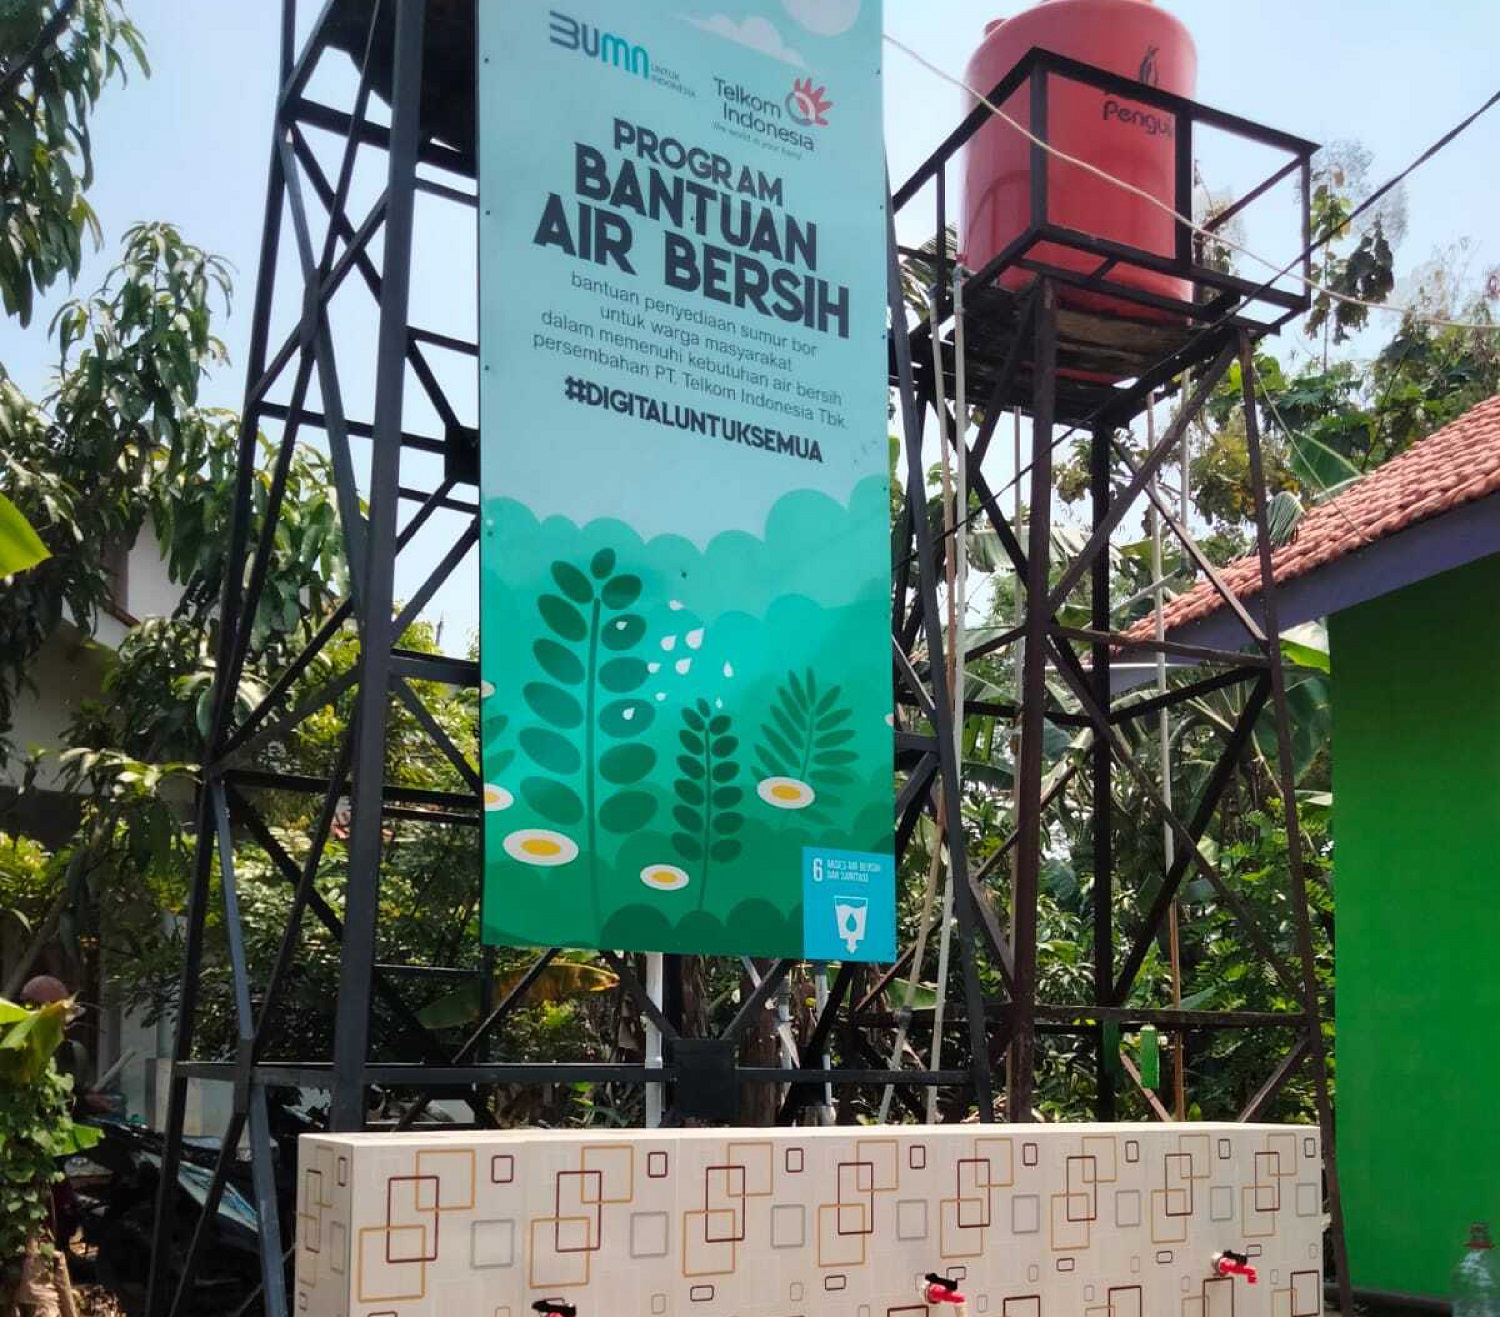 Telkom Targetkan 100 Wilayah Indonesia Dapat Bantuan Akses Air Bersih